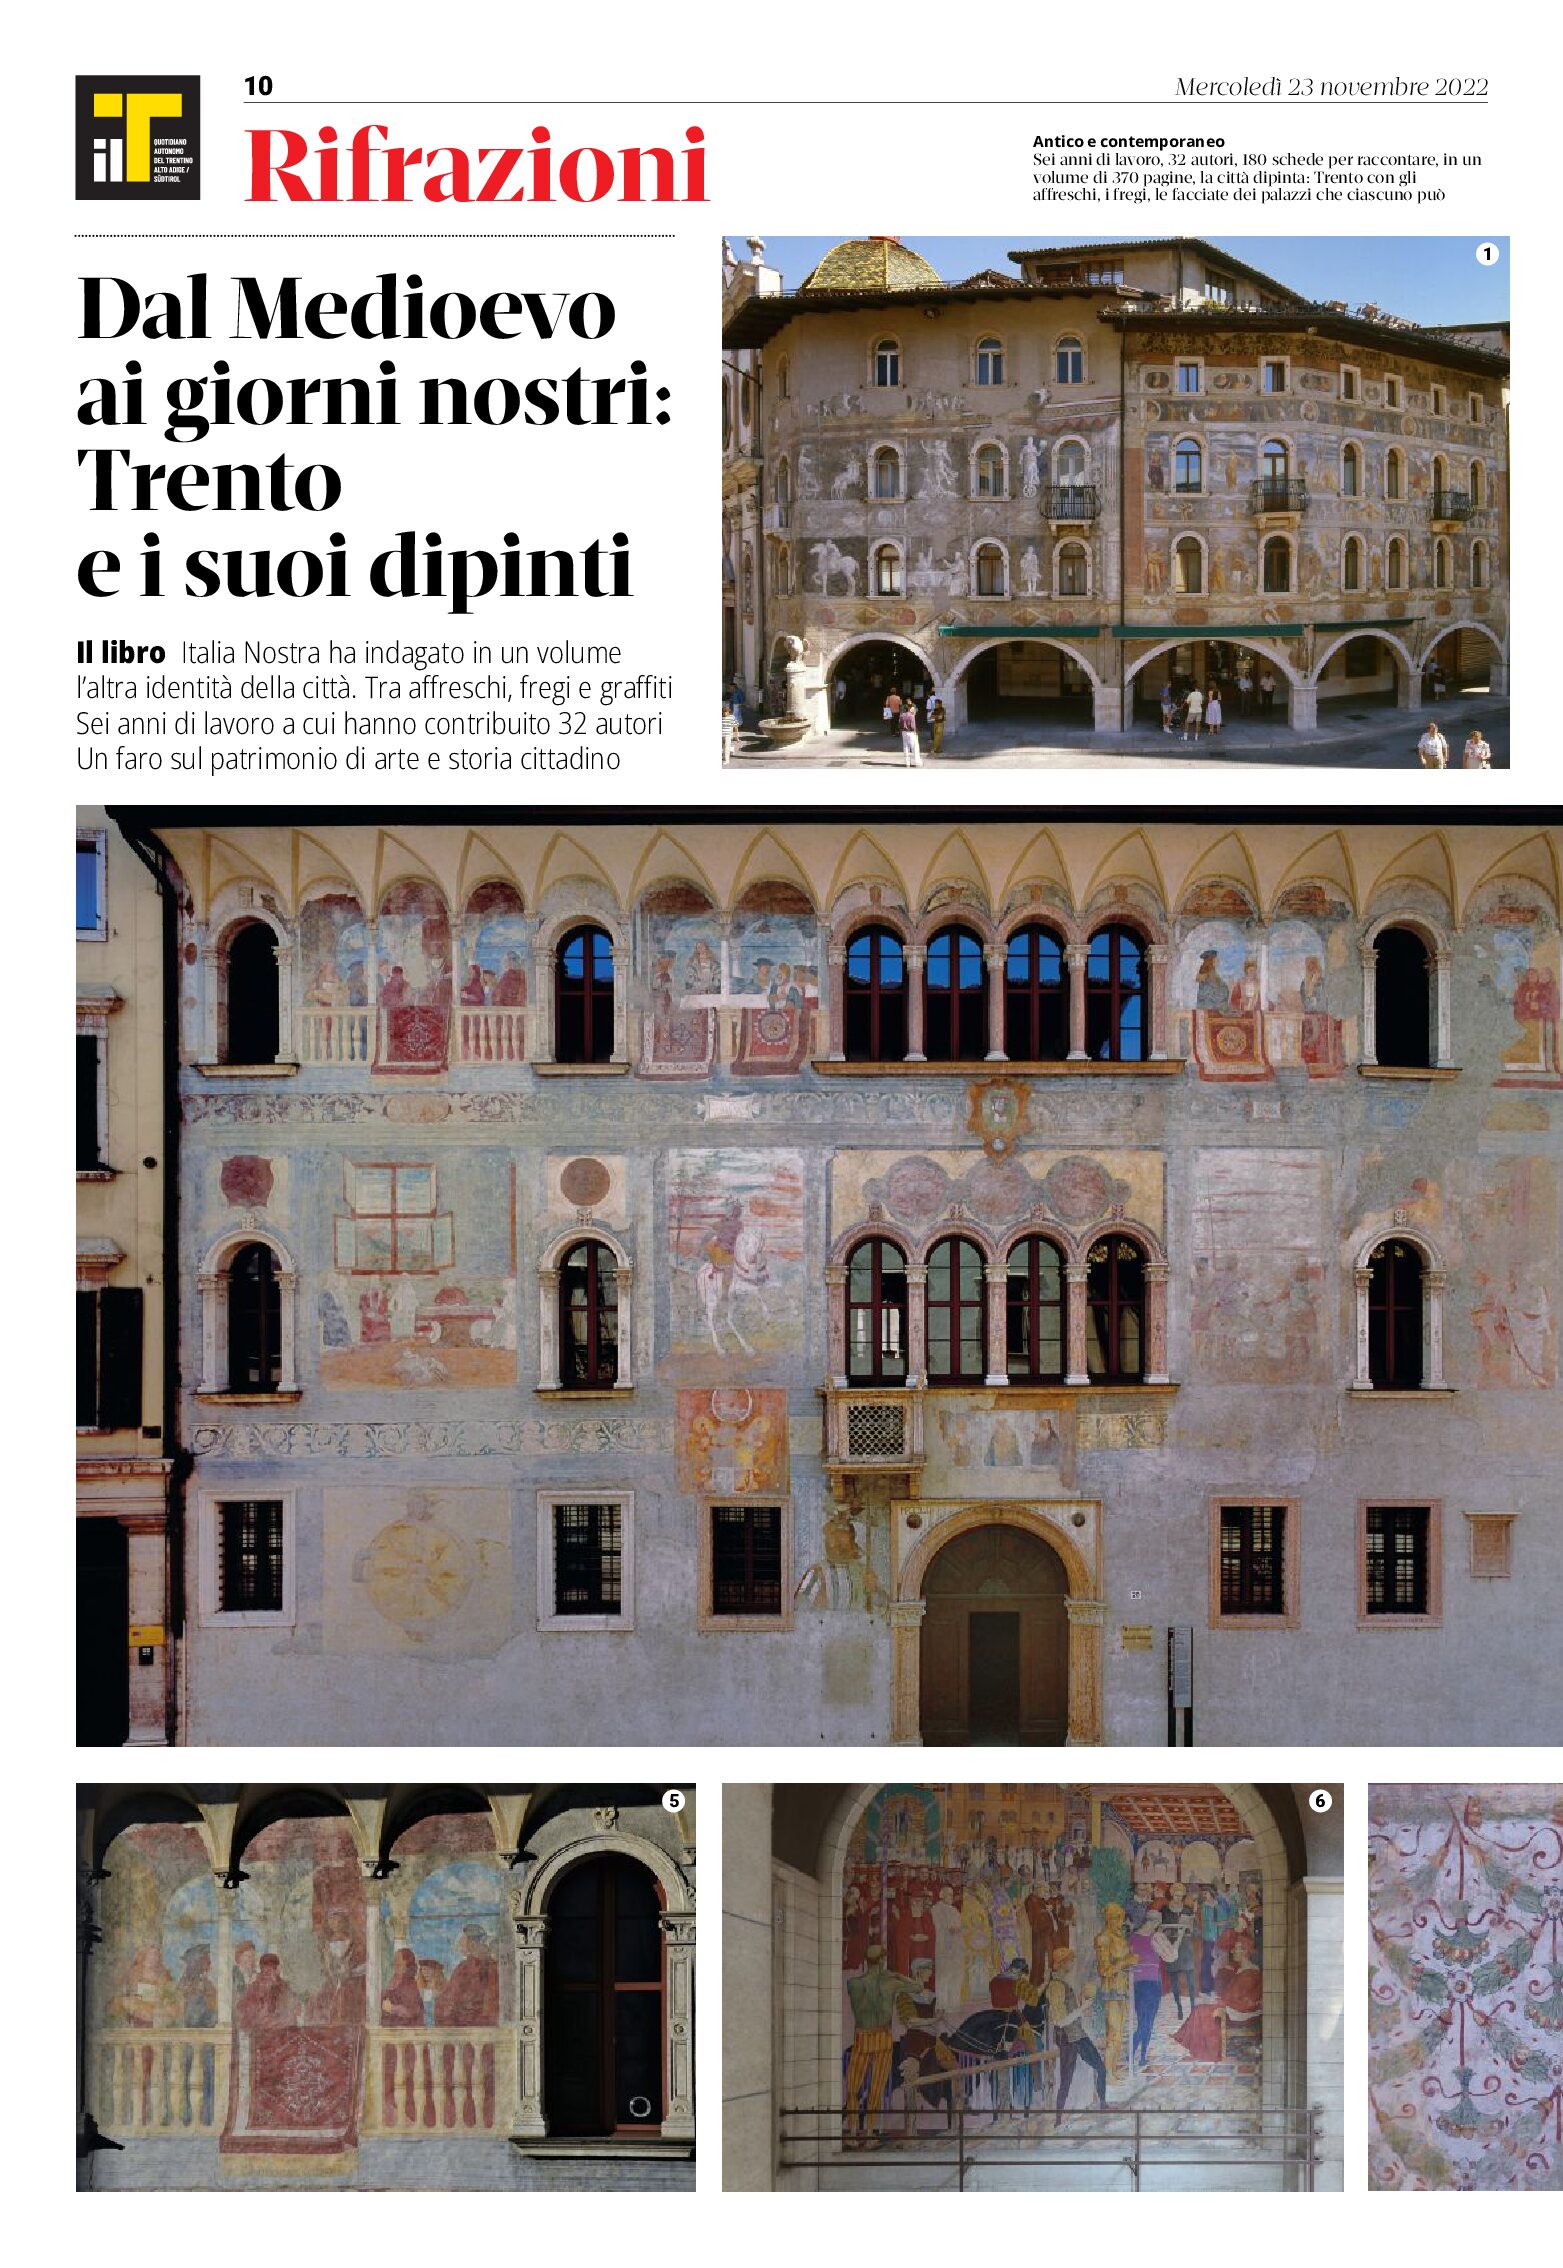 Italia Nostra e il suo volume “Trento città dipinta”, dal Medioevo ai giorni nostri